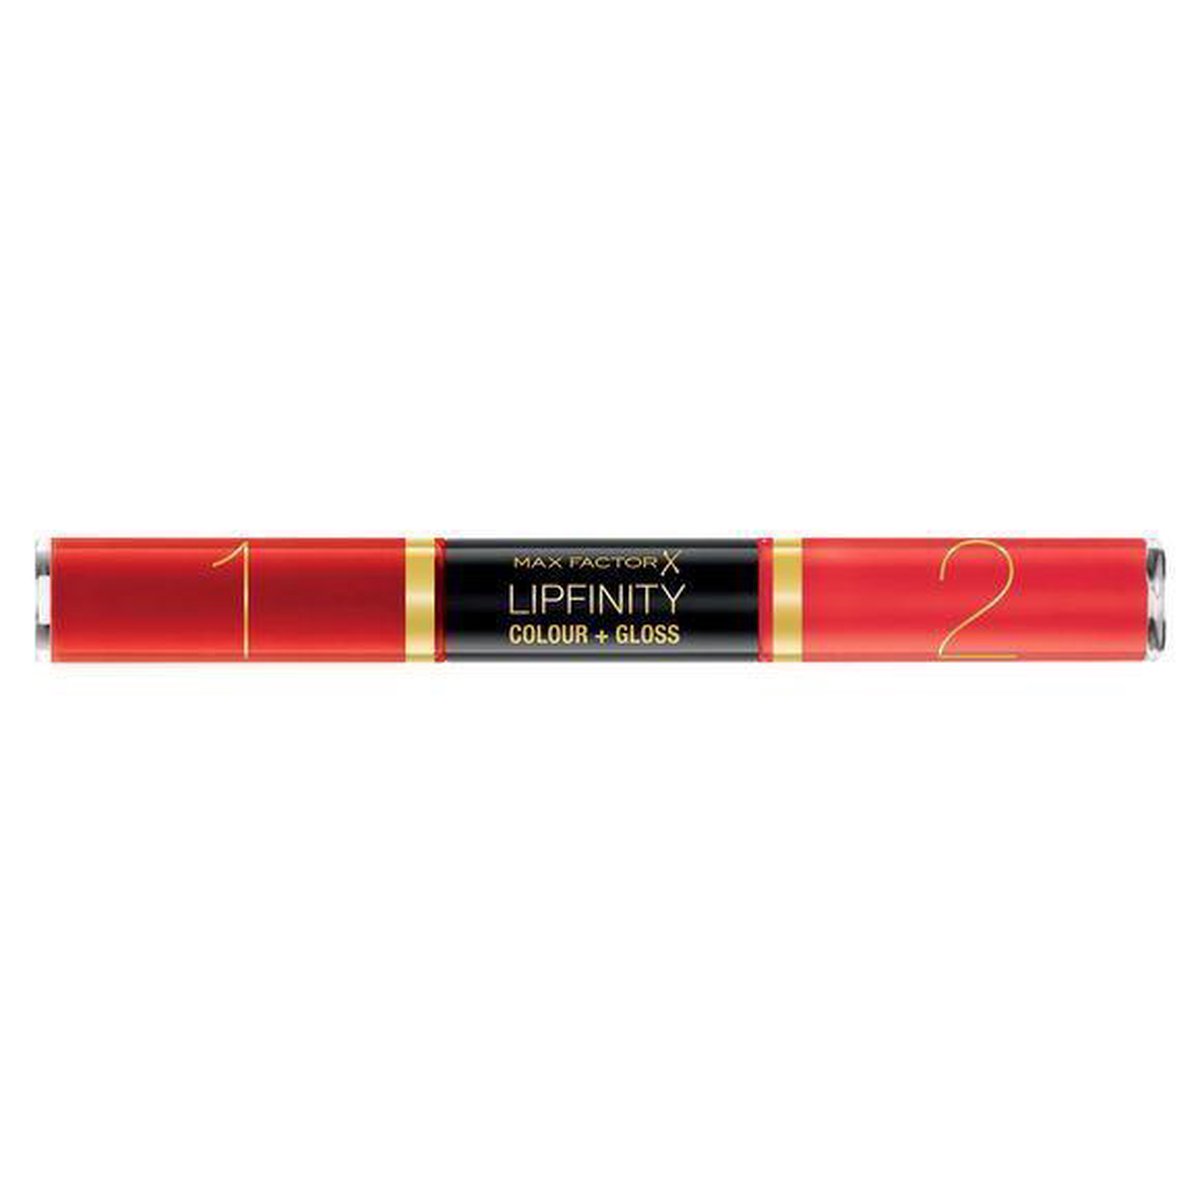 Max Factor Lipfinity Colour & Gloss Lip Gloss - 640 Lasting Grenadin - Max Factor